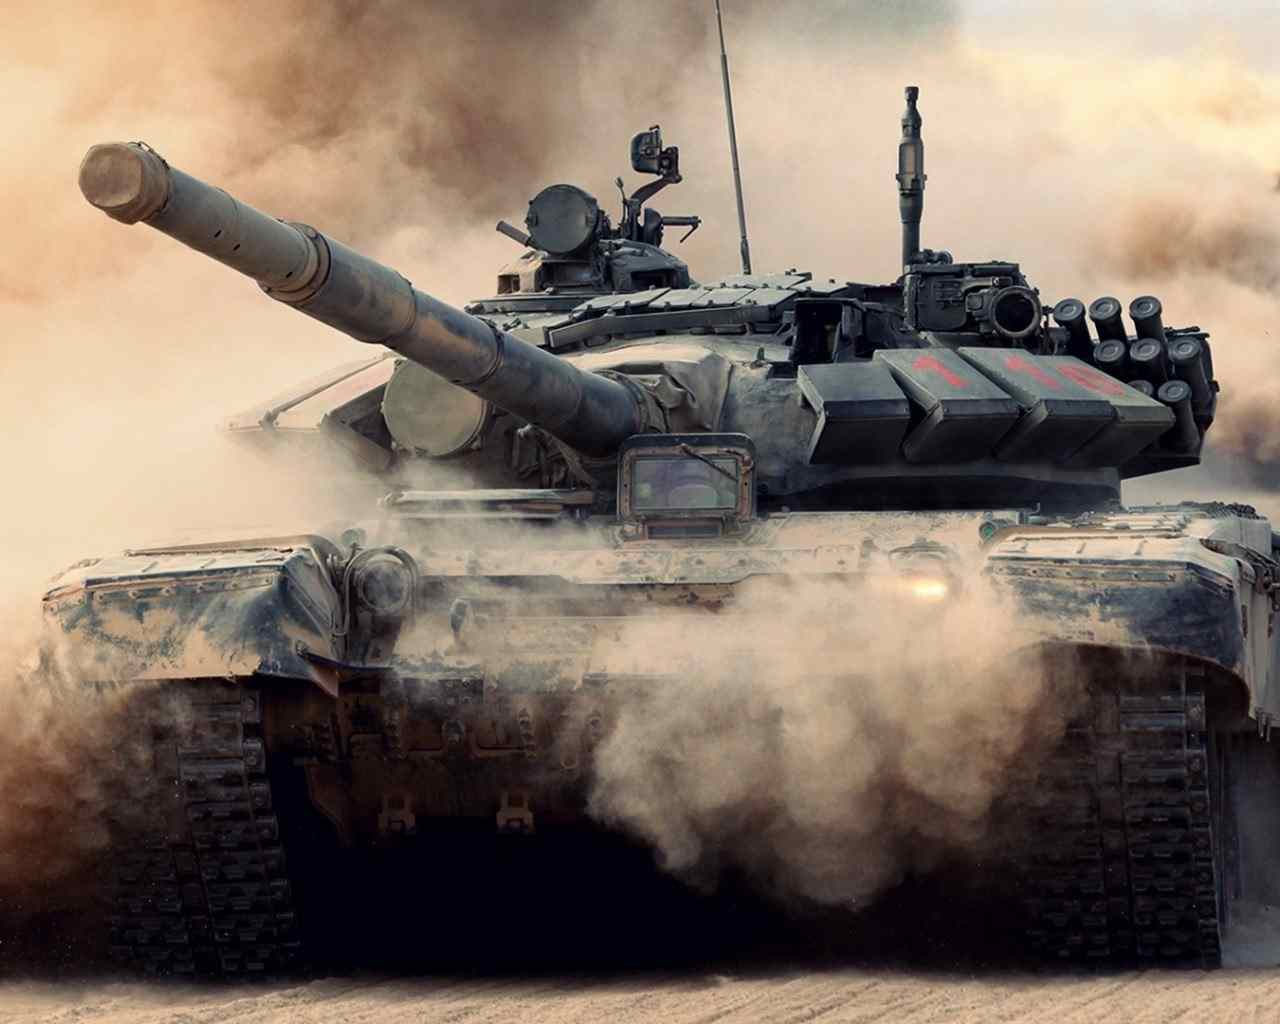 Popular Mechanics - Армата это жемчужина танкостроения, но и российский Т-90 восхищает